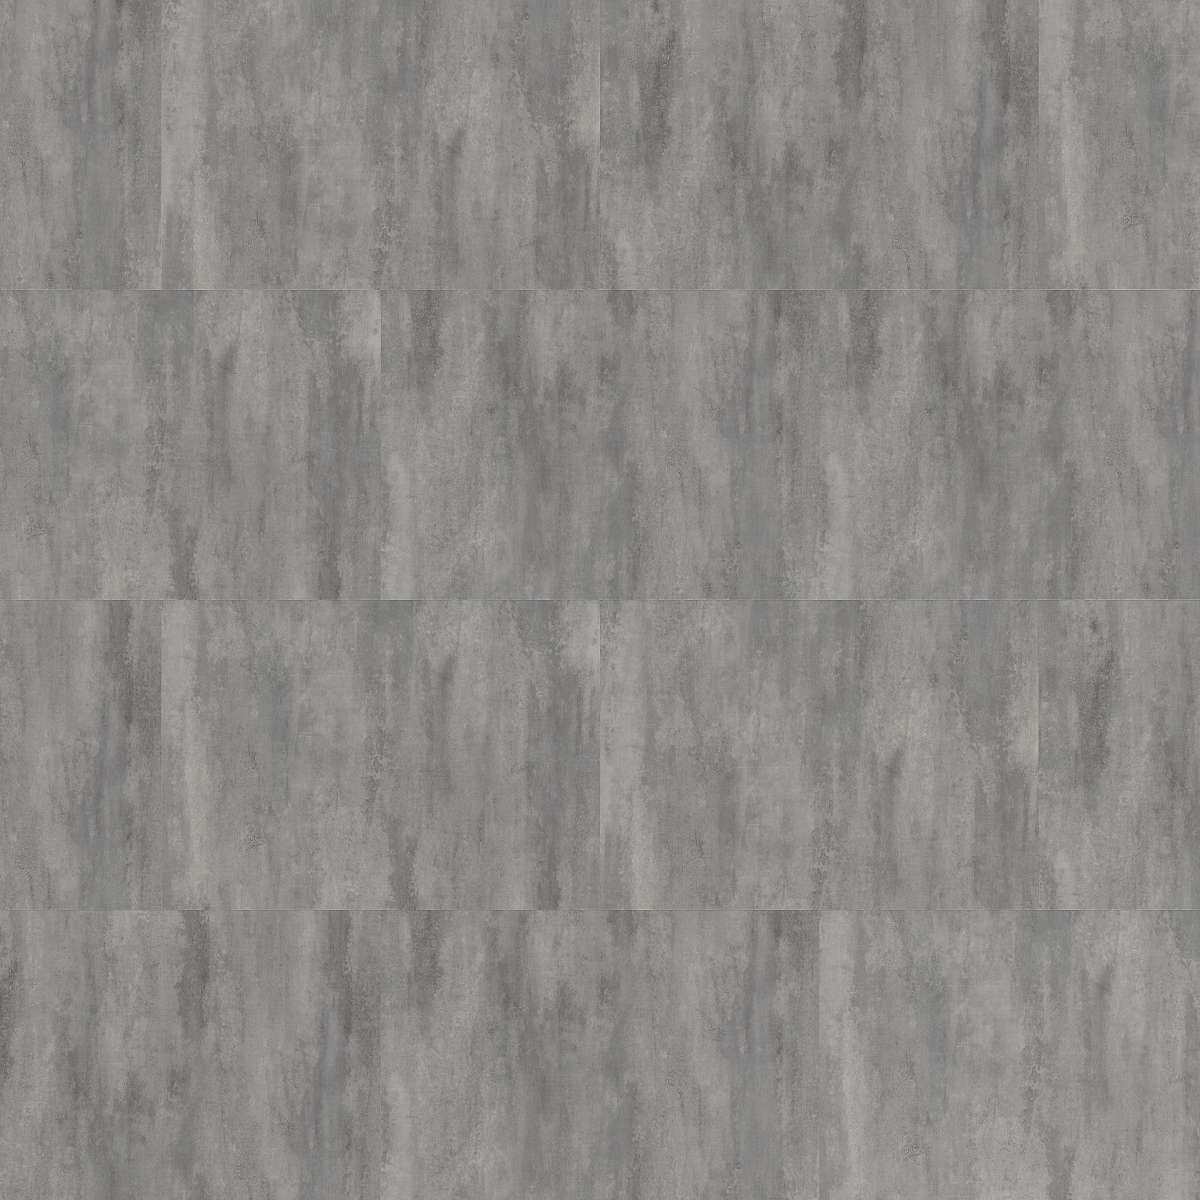 KPP SPC X-CELENT WOOD - Cement dark grey 61606